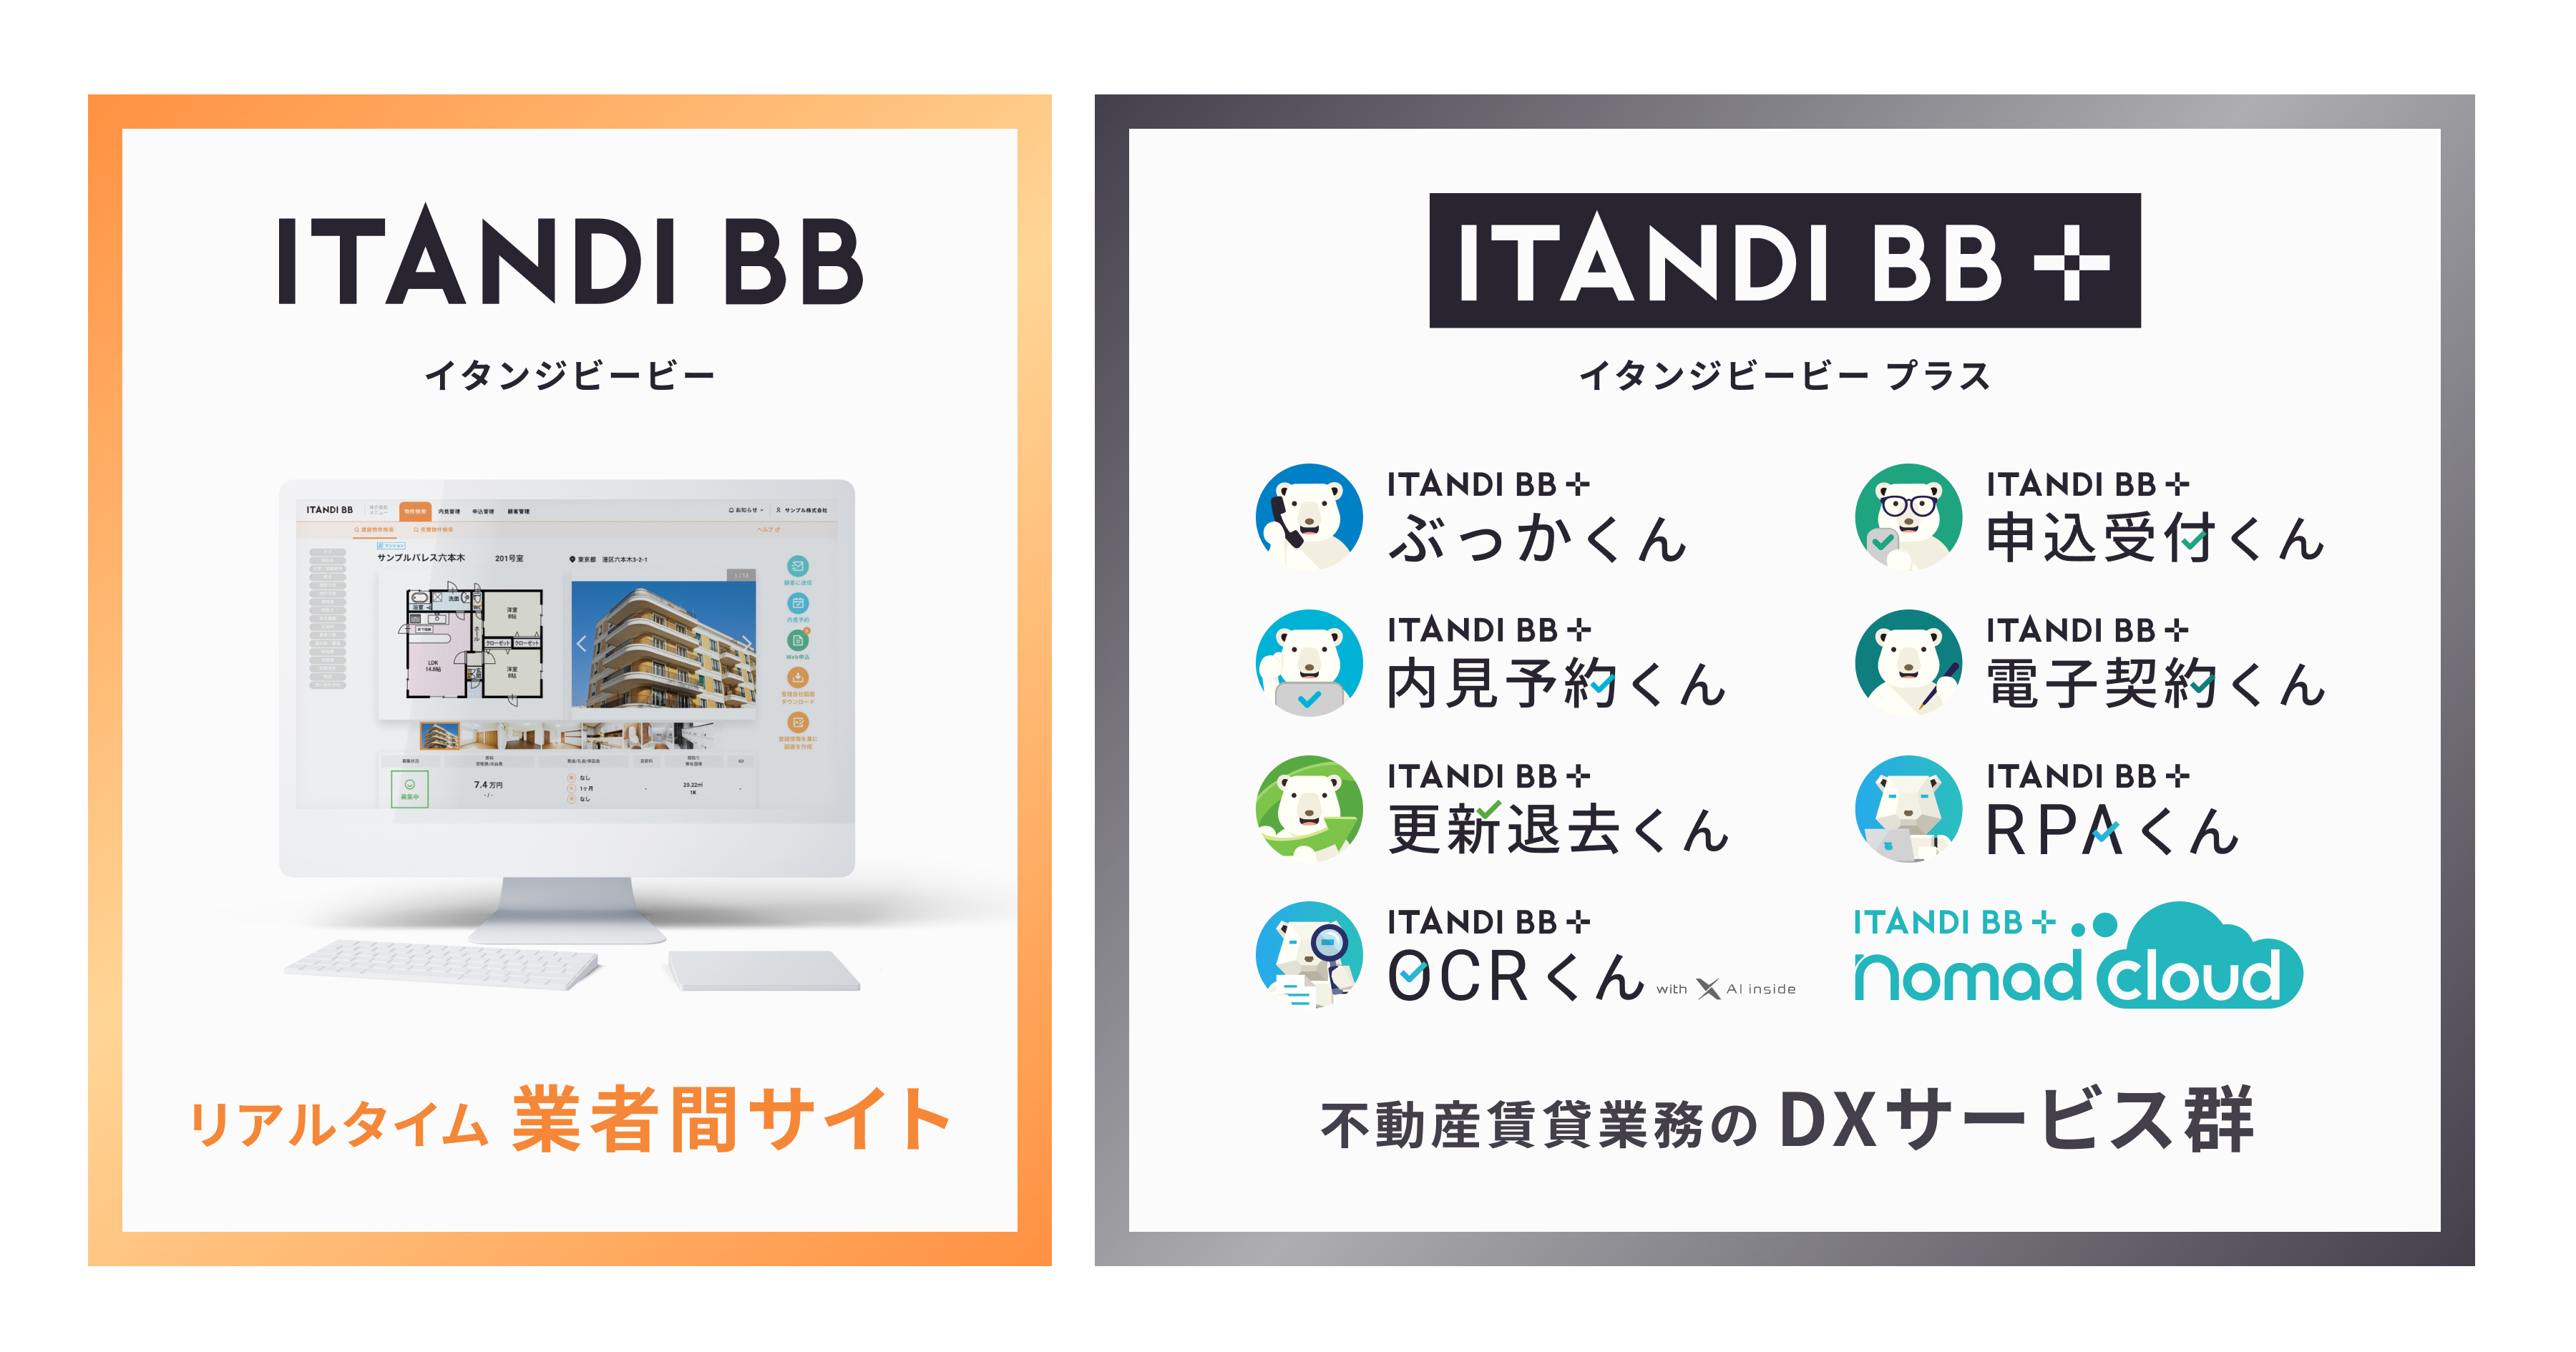 ブランド統合による「ITANDI BB」「ITANDI BB +」のサービスカテゴリー